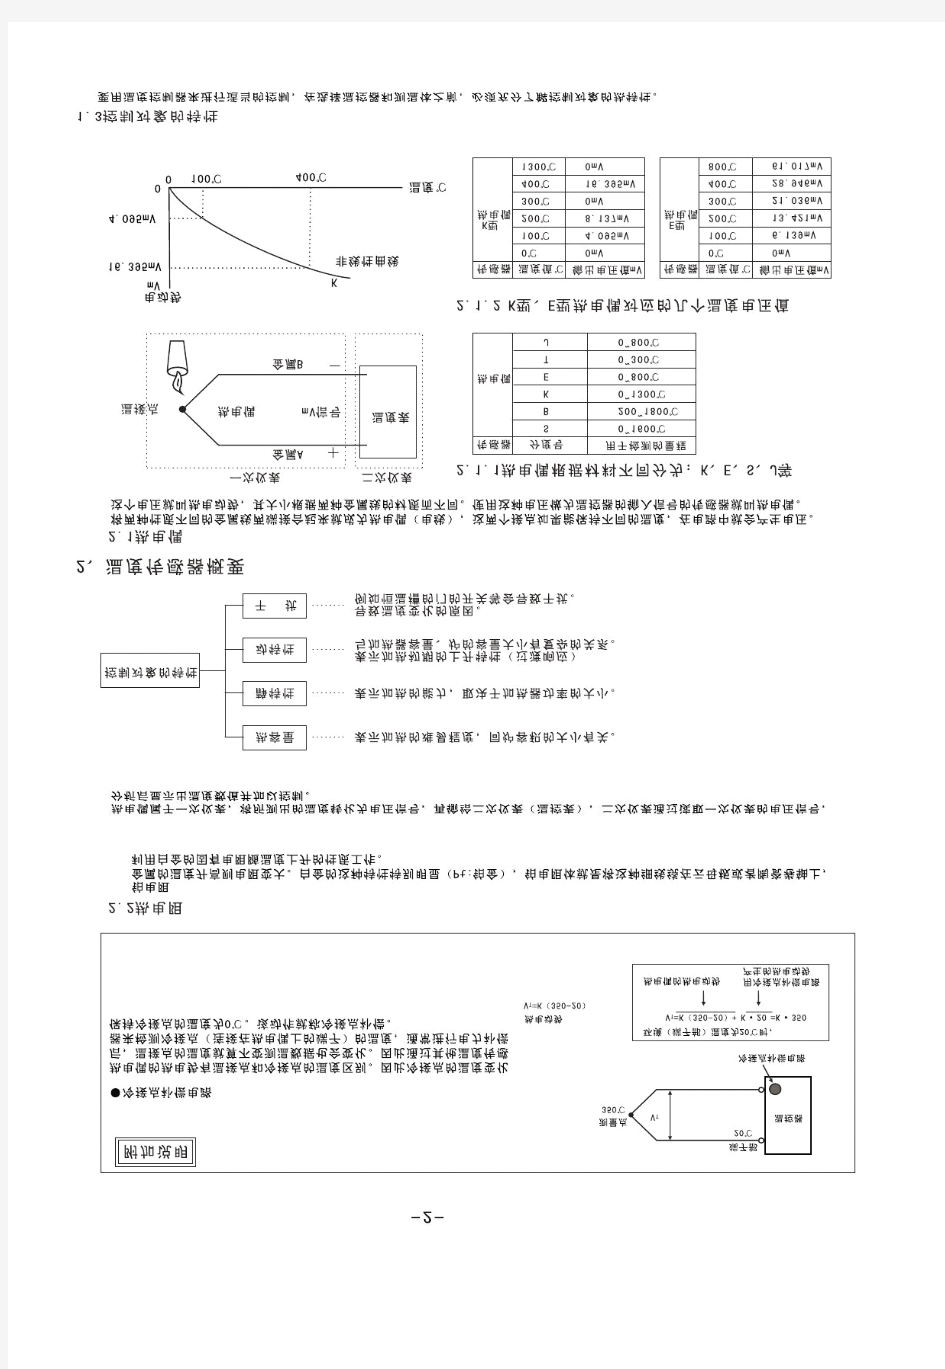 温控器学习资料大全(pdf 10页)